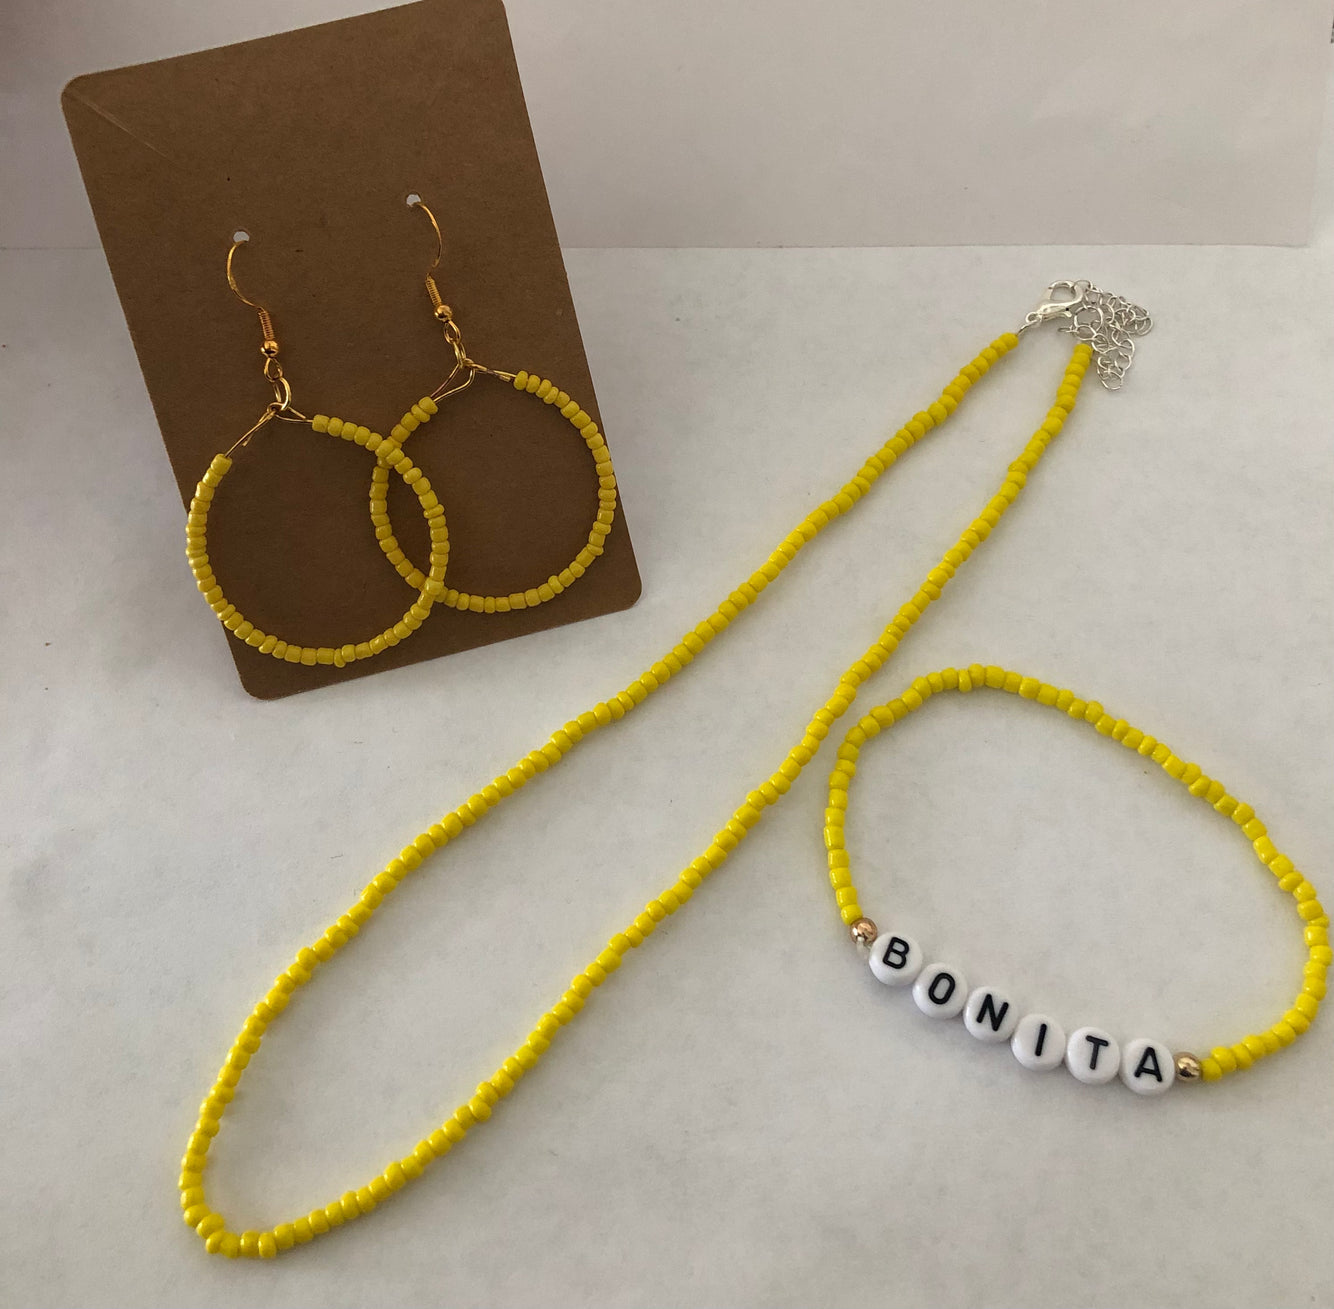 Bonita empowering jewelry set